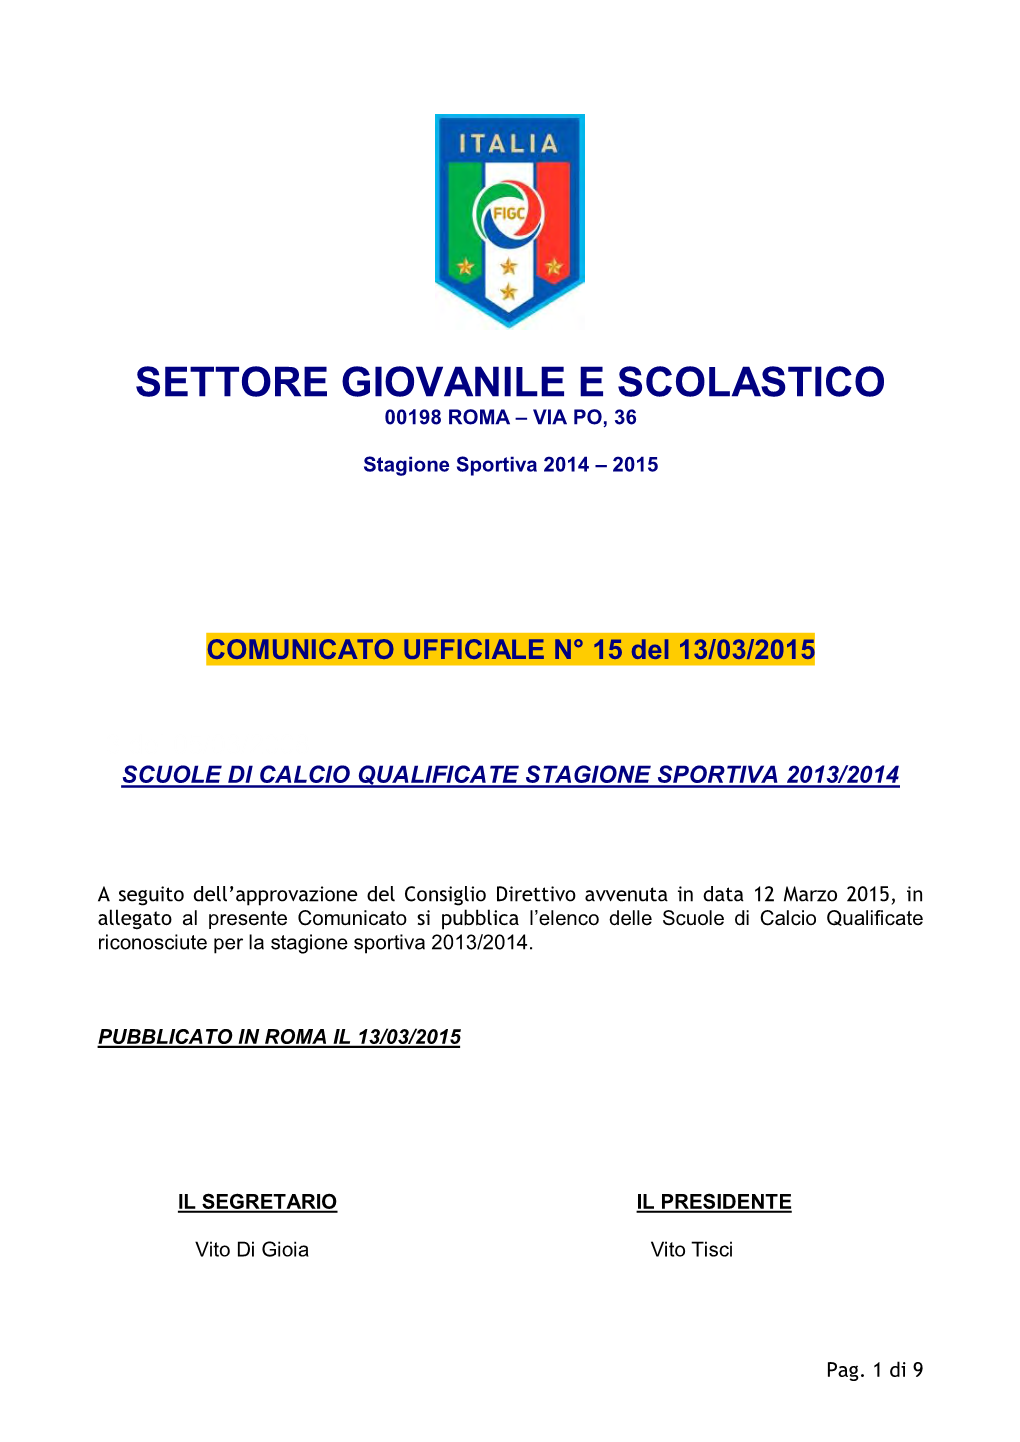 Scuole Di Calcio Qualificate Stagione Sportiva 2013/2014